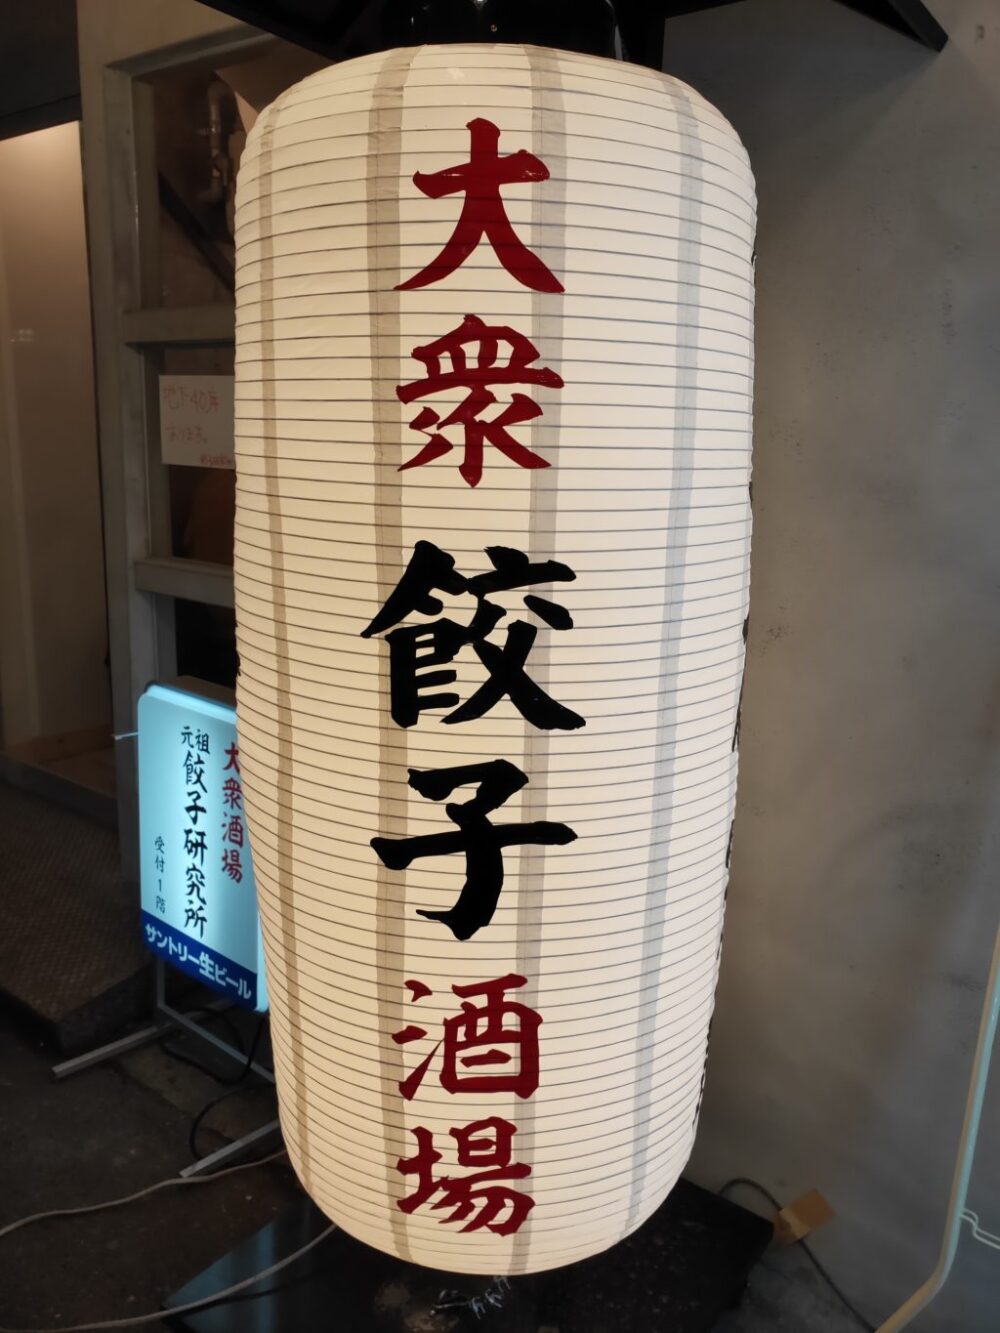 店名が印象的な渋谷の居酒屋 餃子研究所さんで焼餃子と水餃子を食べる